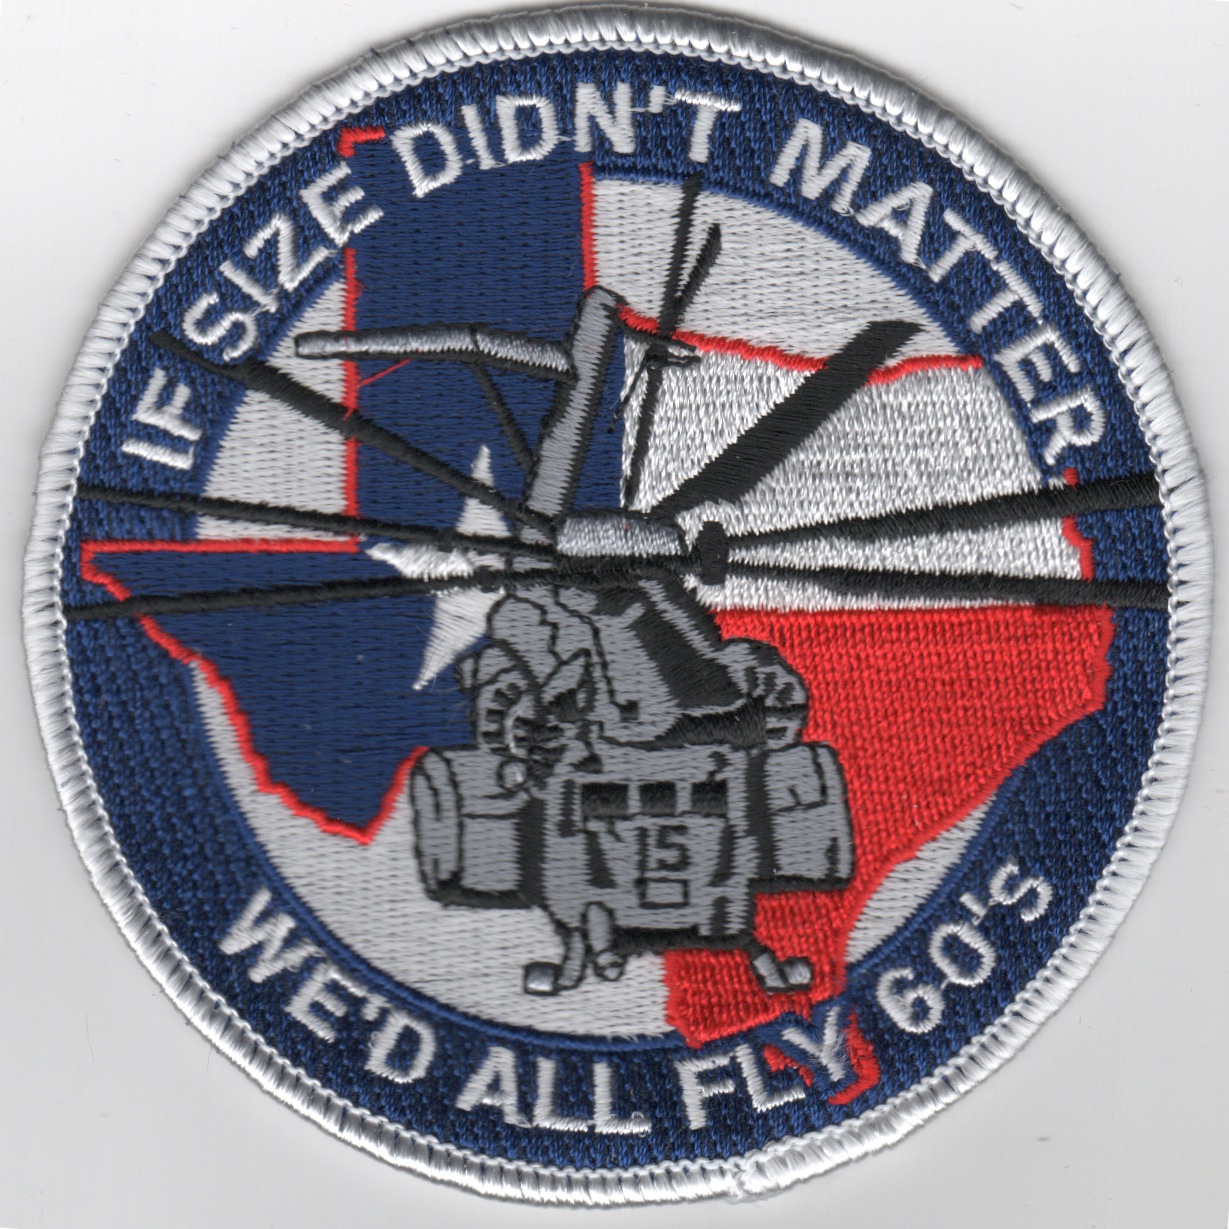 MH-53E 'If Size Didn't Matter' (TX)